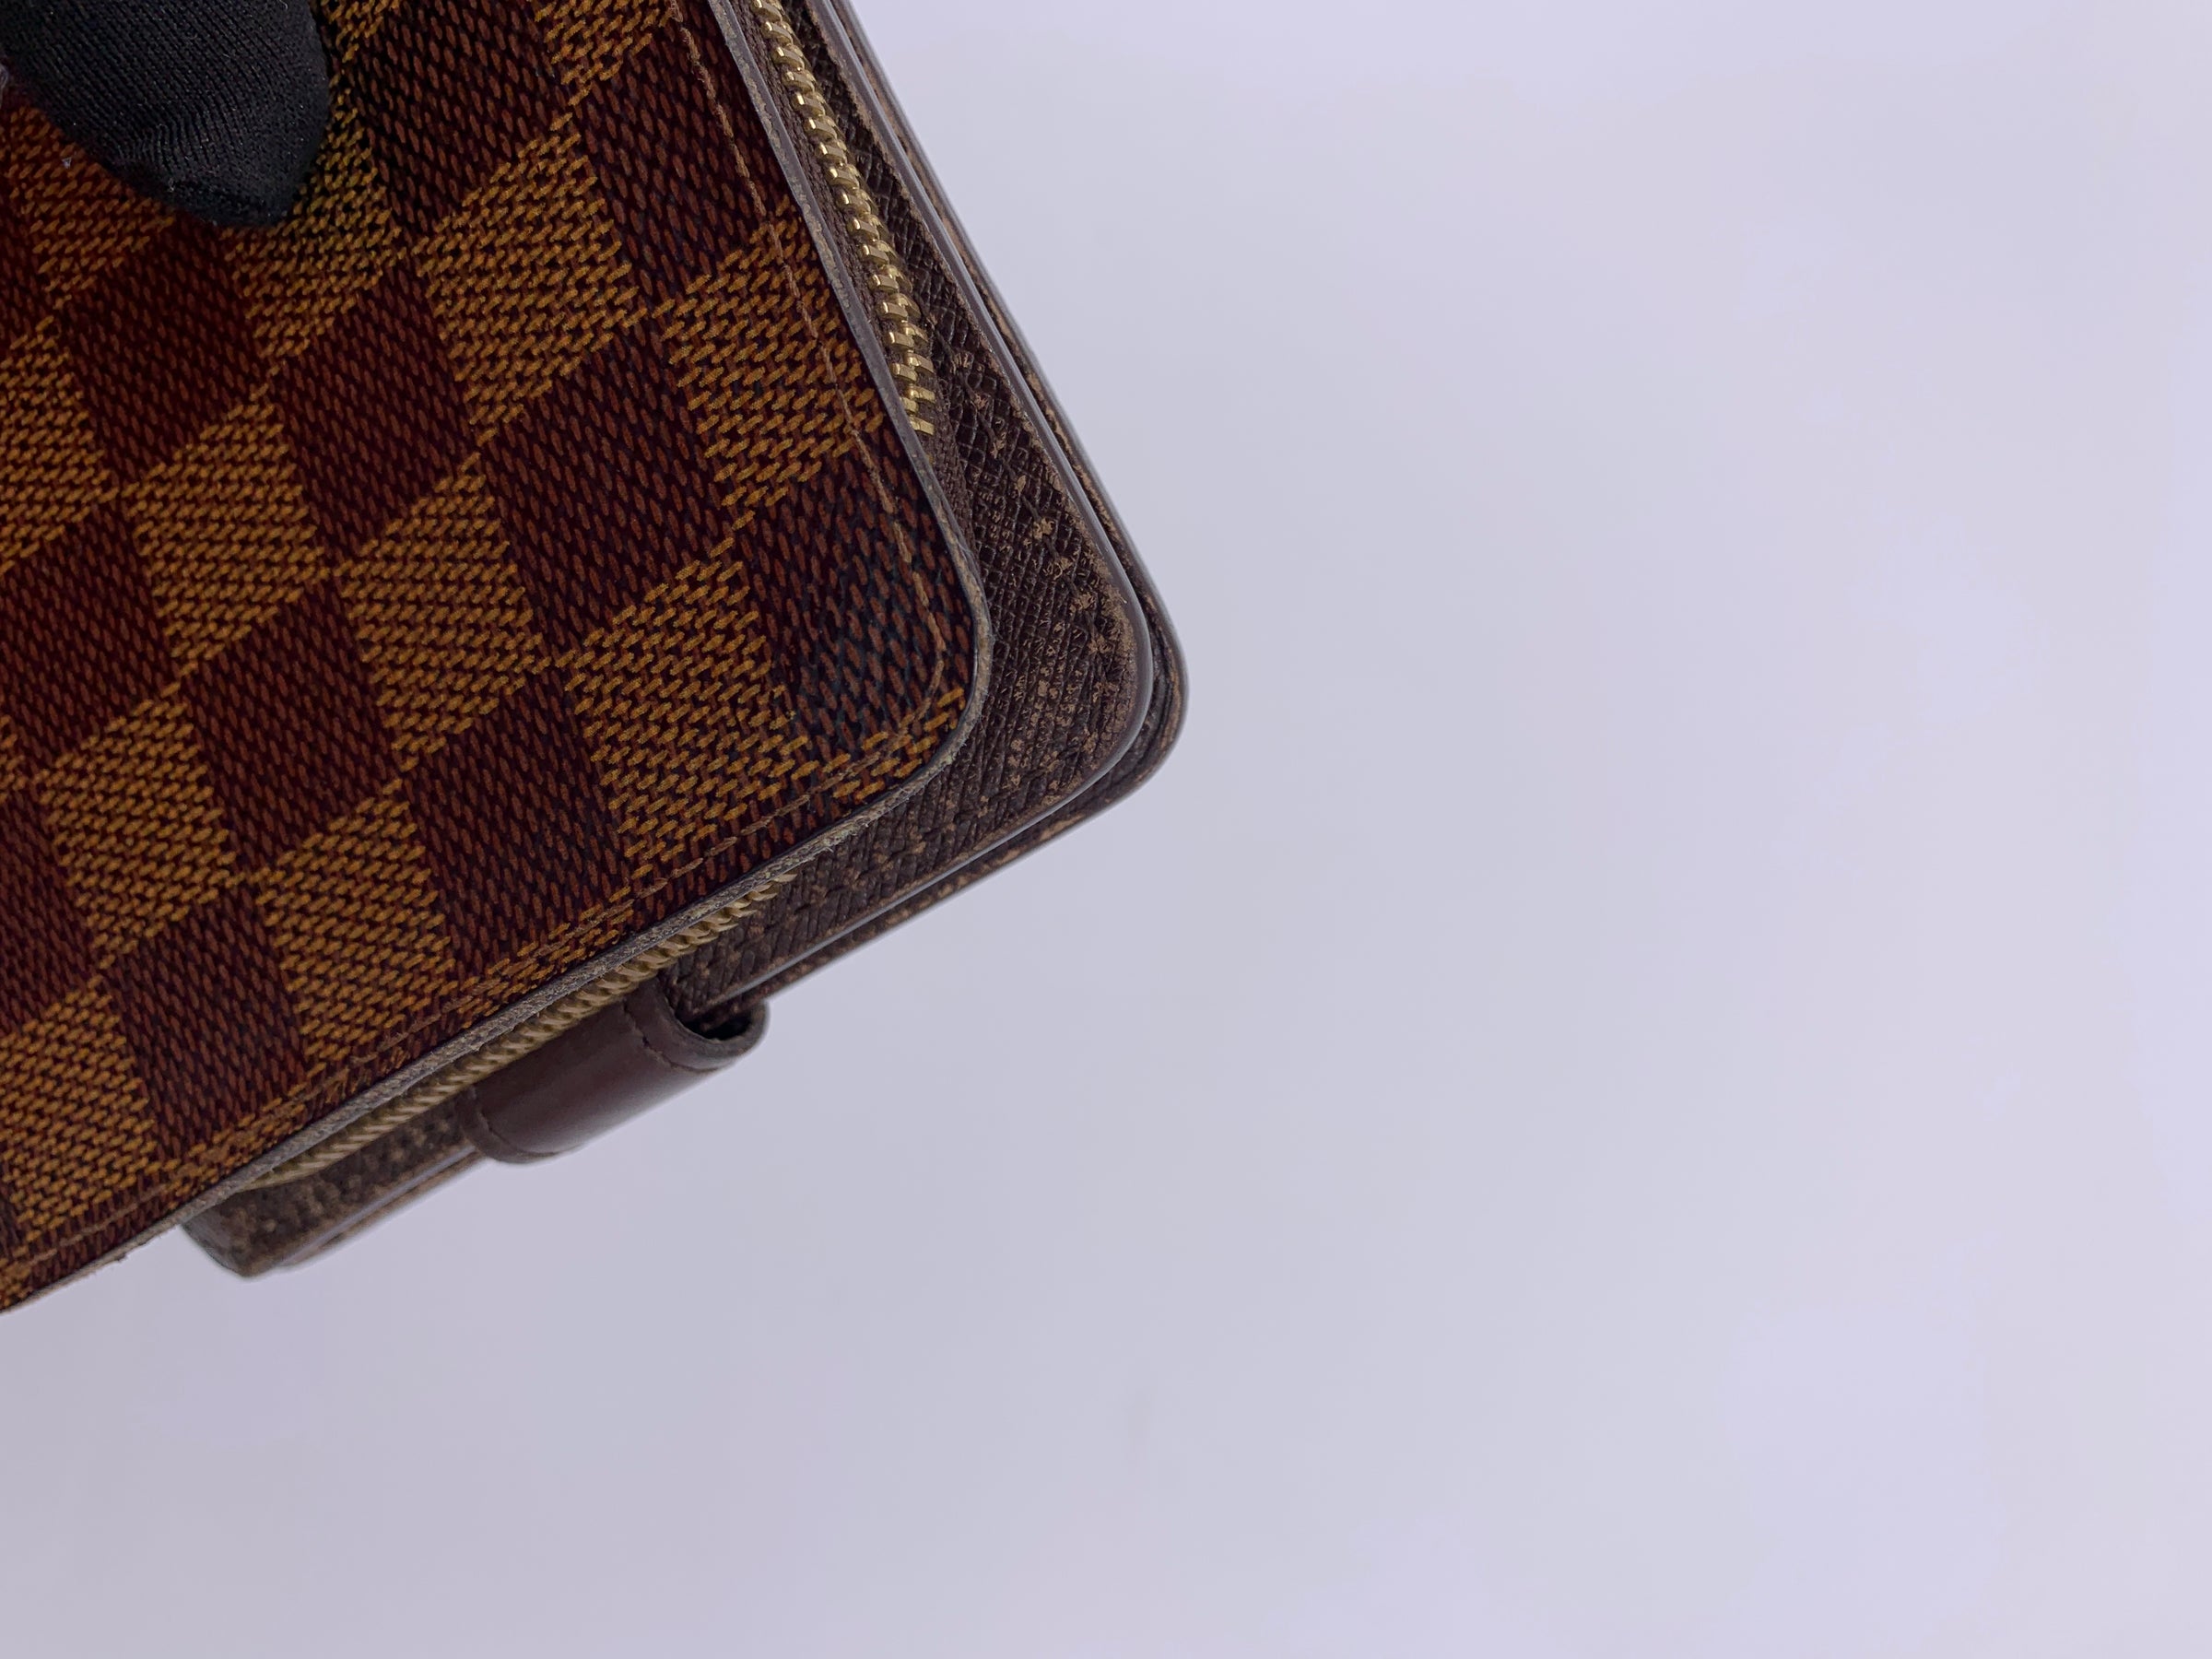 Louis Vuitton Damier Ebene Trifold Wallet – Closet Connection Resale